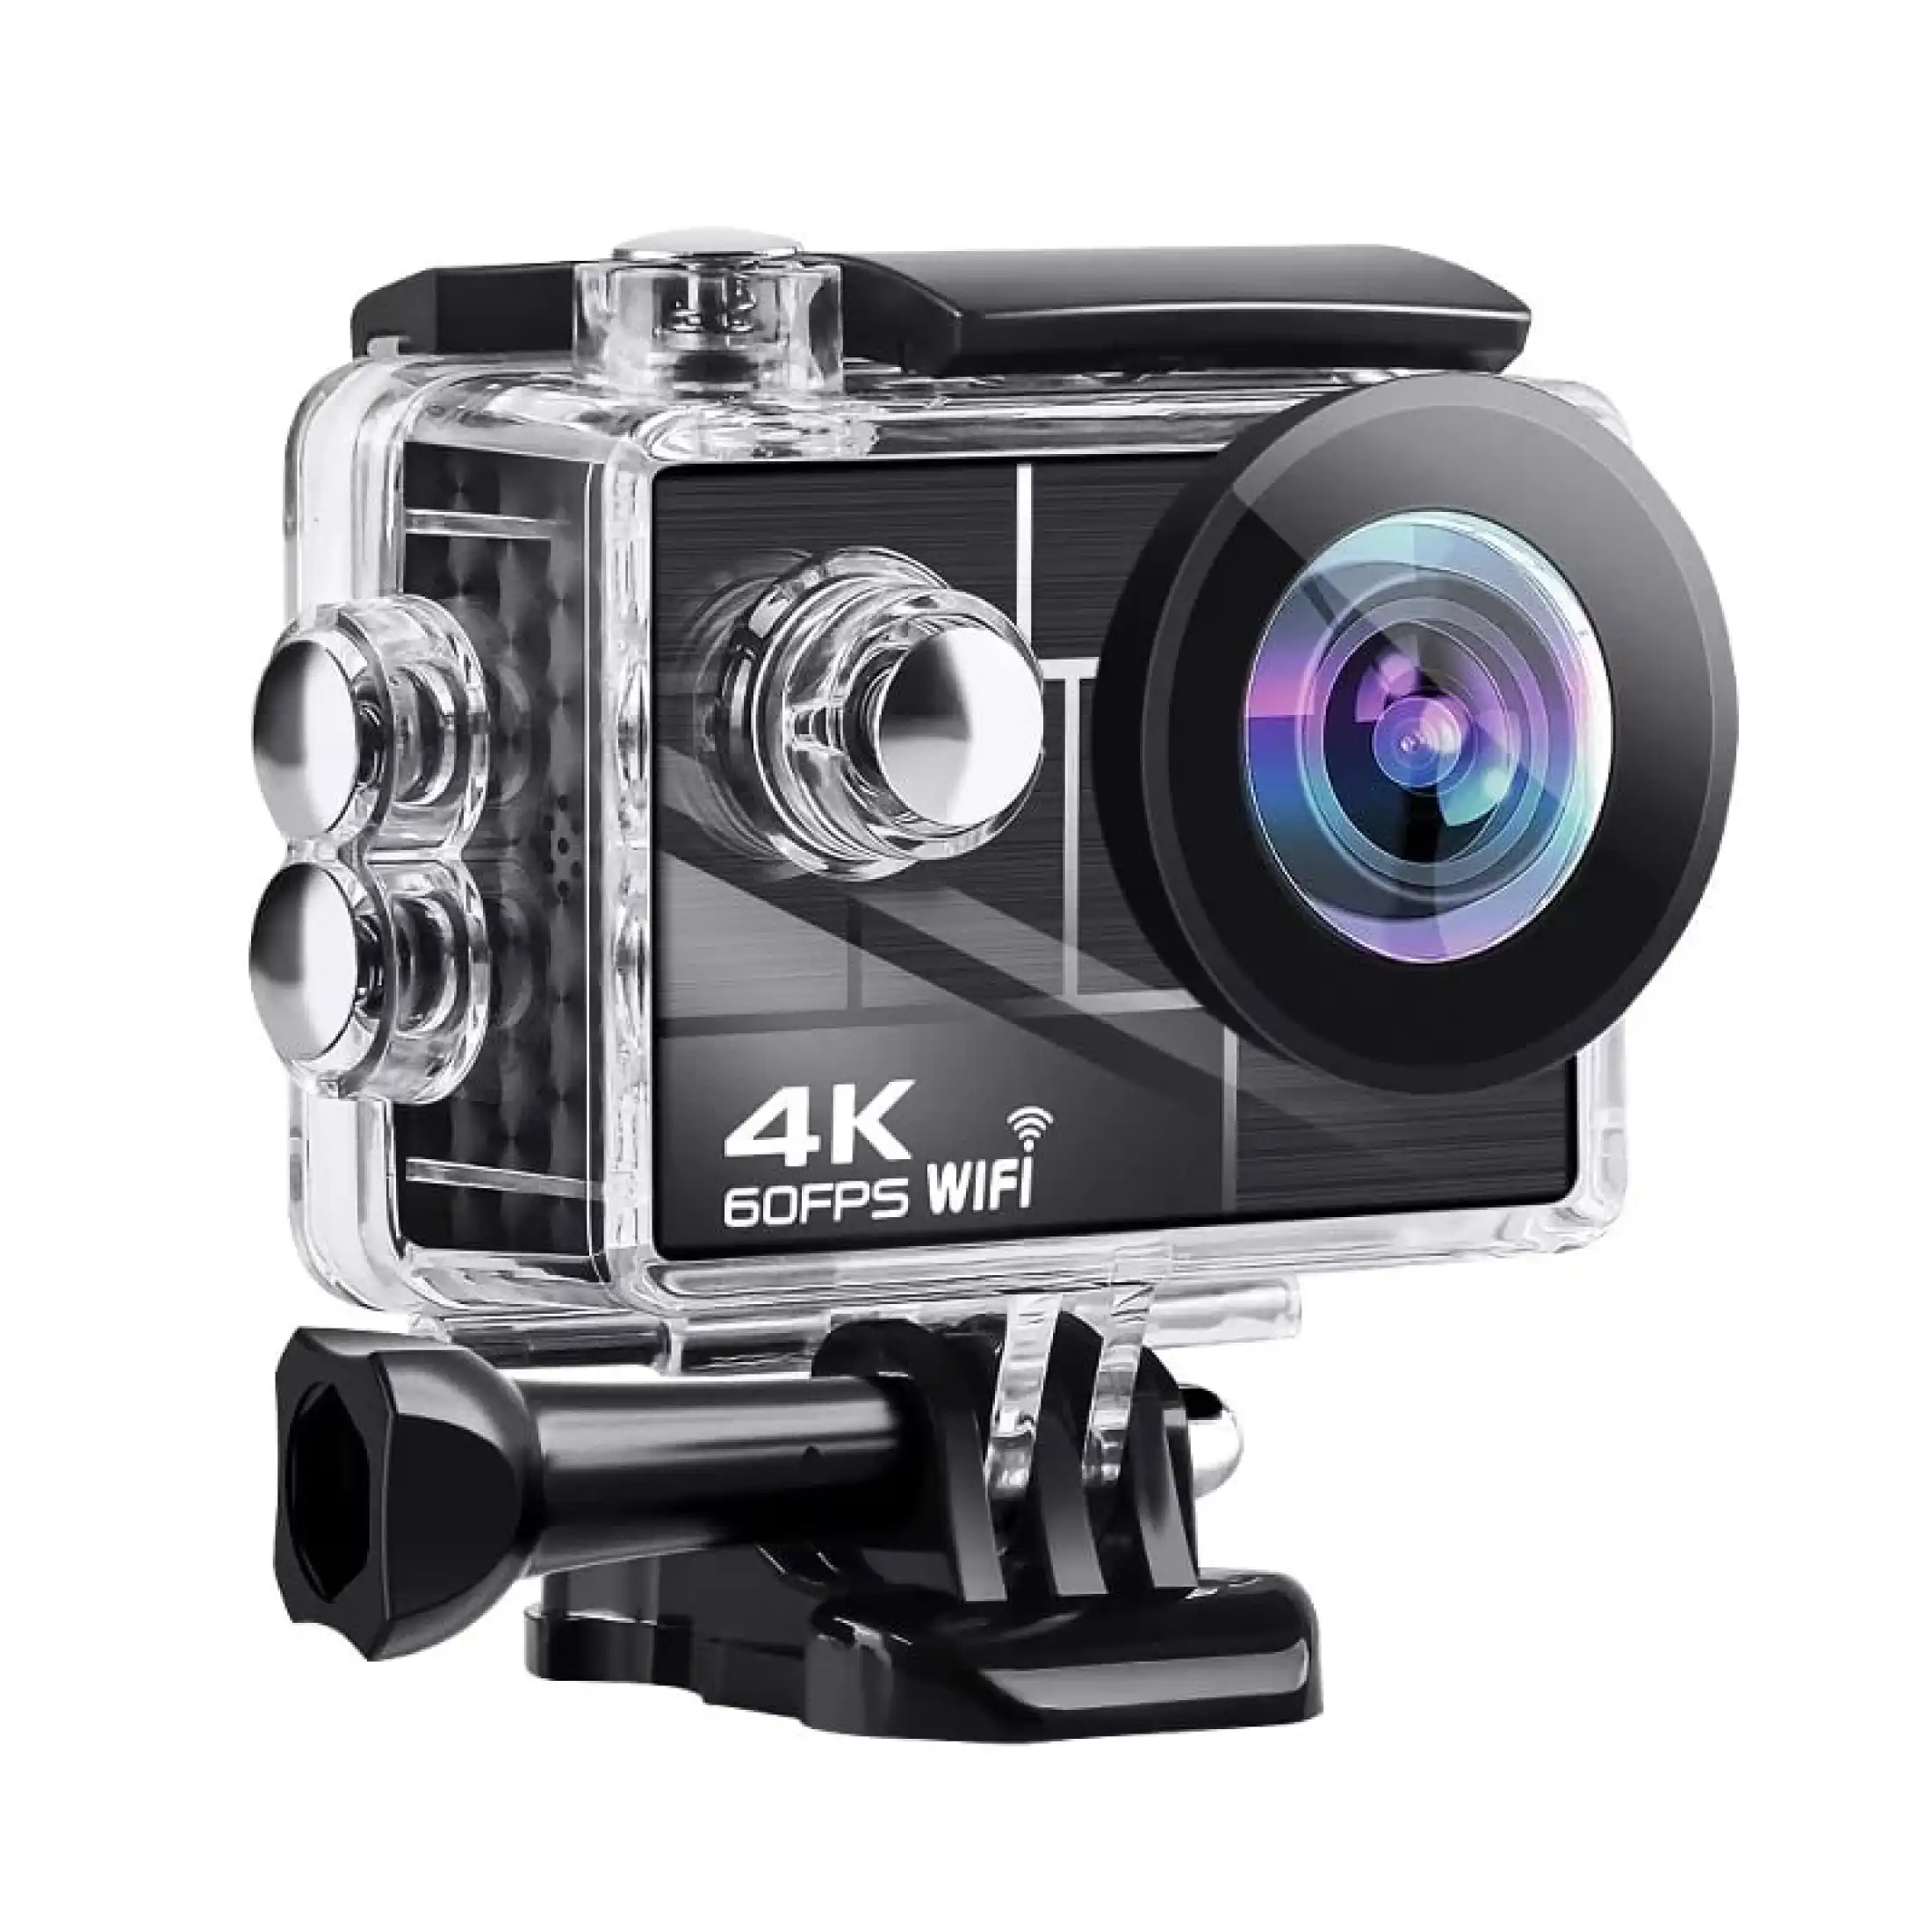 เกี่ยวกับ กล้องกันน้ำ 4K รุ่นใหม่ล่าสุด ถ่ายใต้น้ำ ชัดจริง 4Kแท้แน่นอน พร้อมรีโมท Sport camera Action camera 4K Ultra HD waterproof WIFI FREE Remote (ของแท้ 100%)- แบตอึดที่สุดถึง 1350